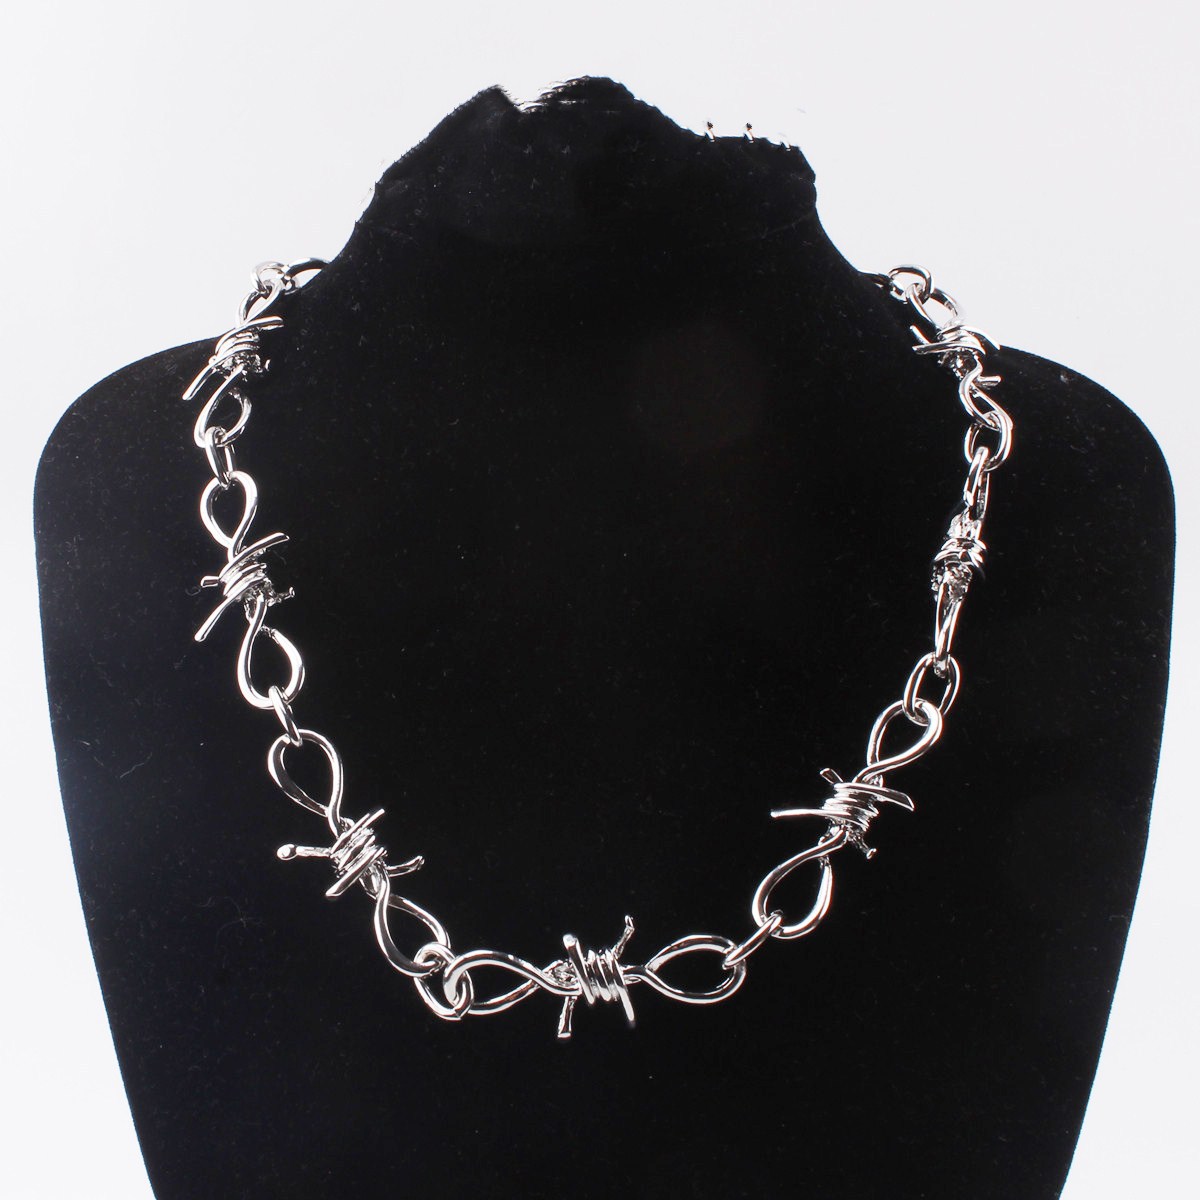 1:51 cm necklace